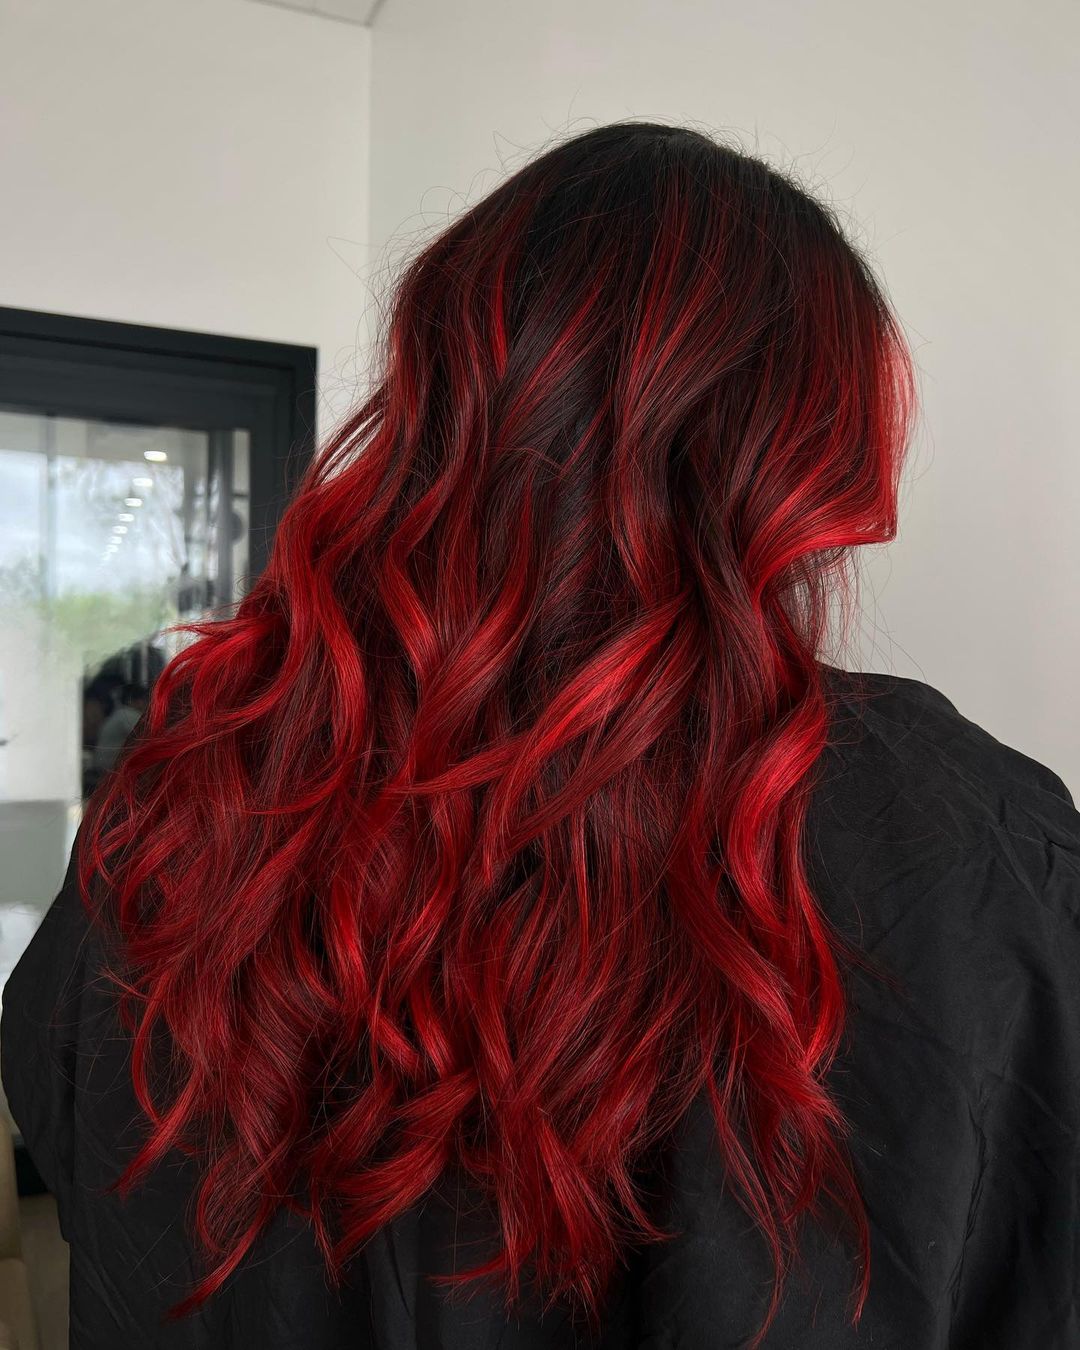 pelo rojo sangre sobre base negra